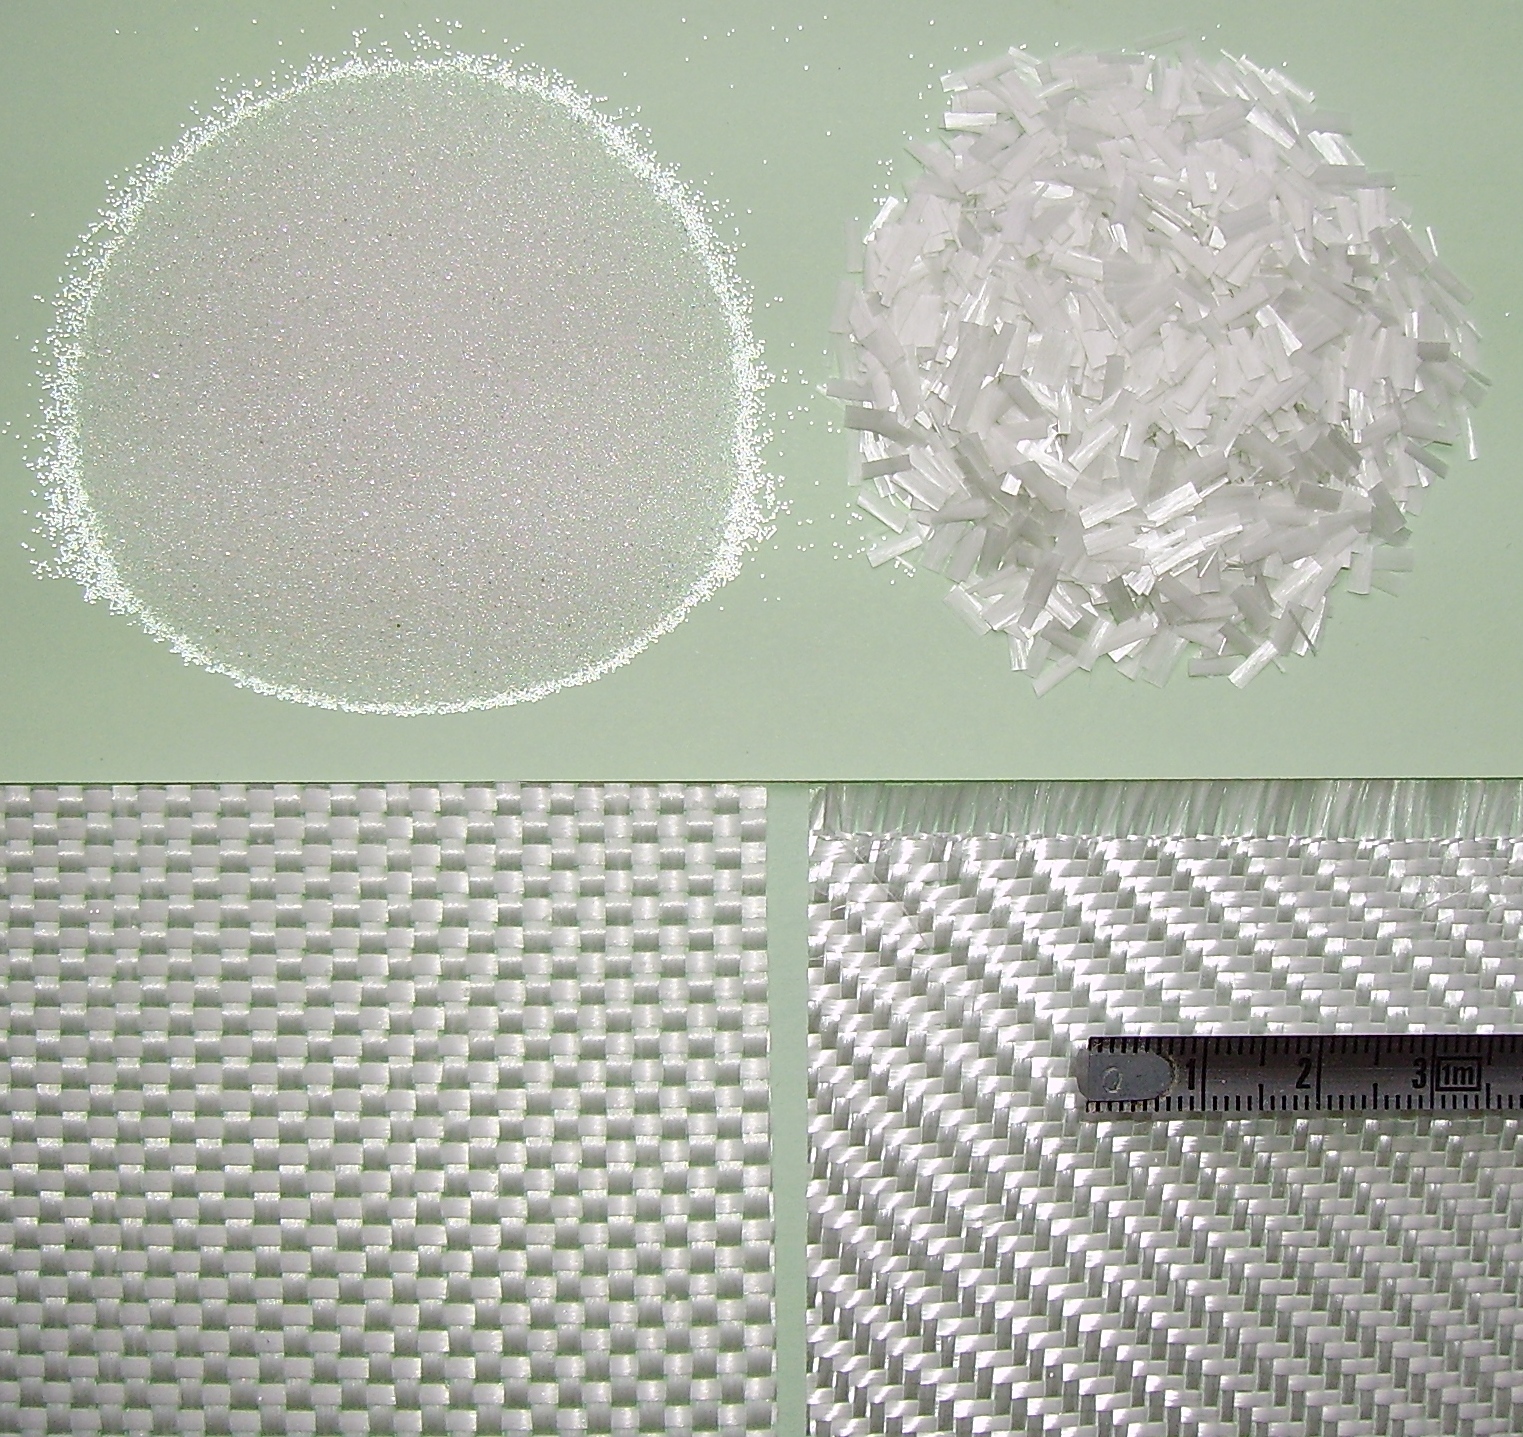 Стеклянные шарики, крошка и тканое стекловолокно — основа стеклопластиков // Wikipedia Commons